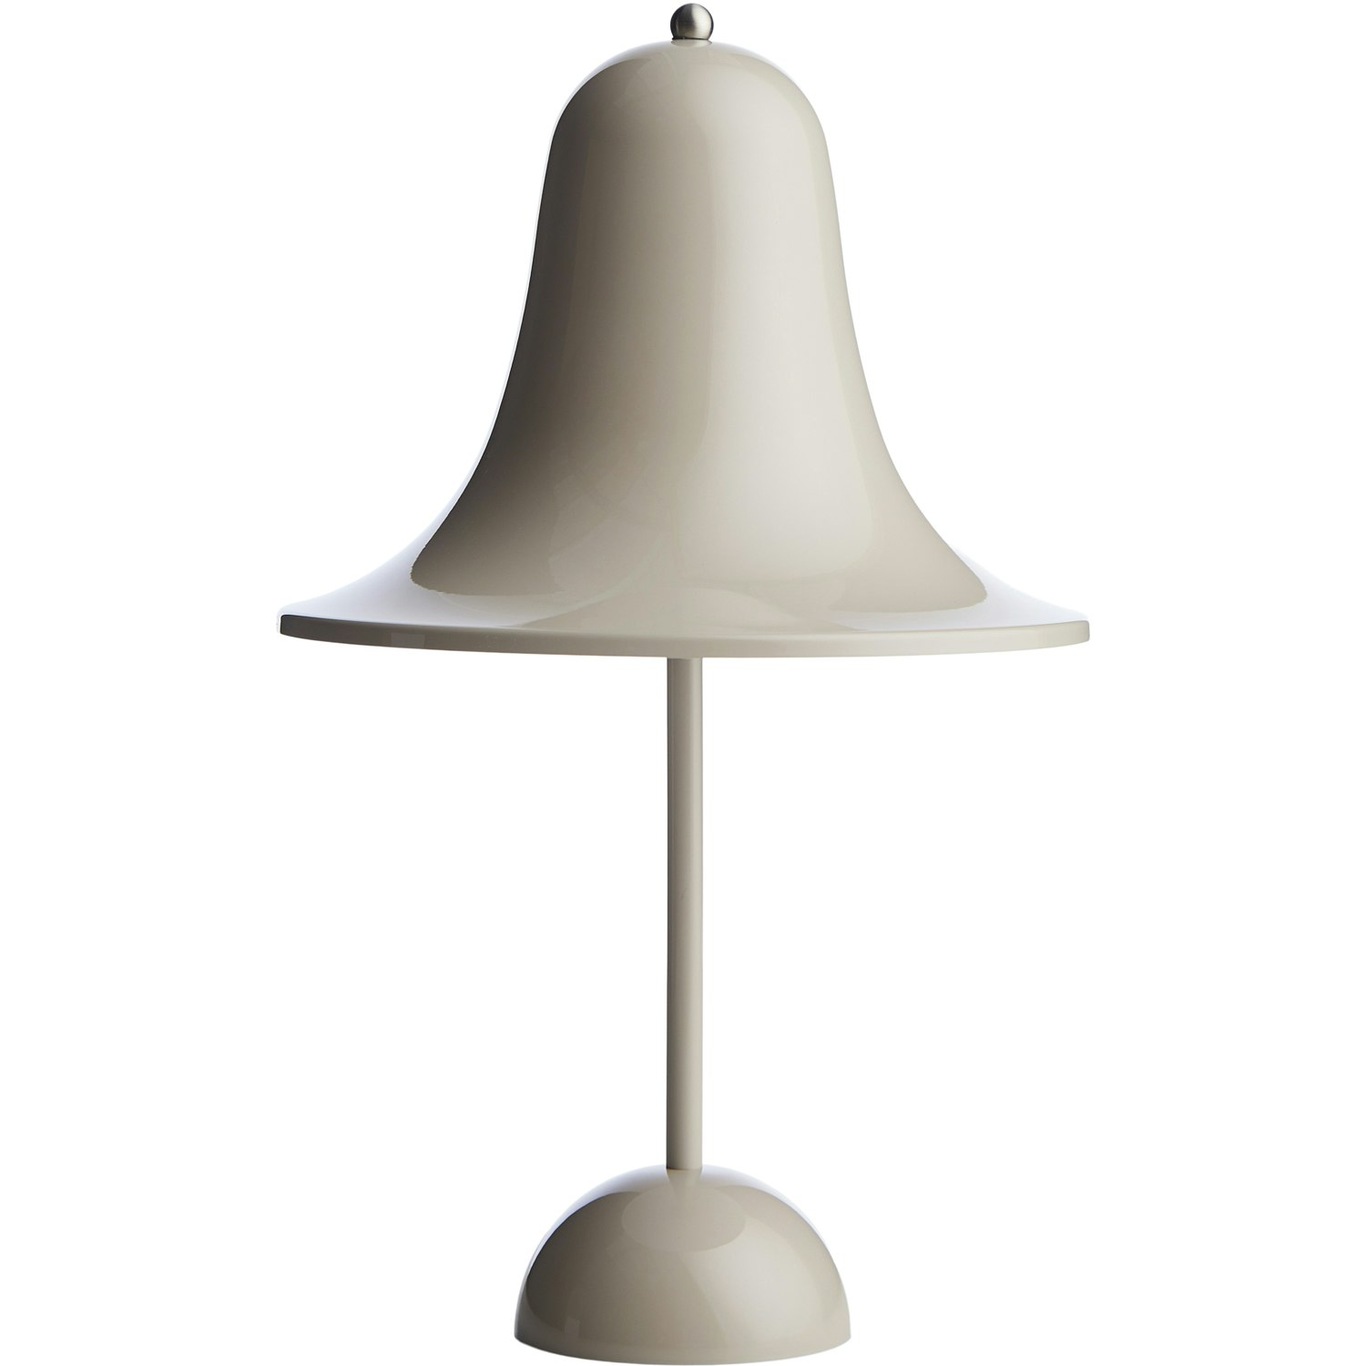 Pantop Table Lamp Portable, Sand Gray